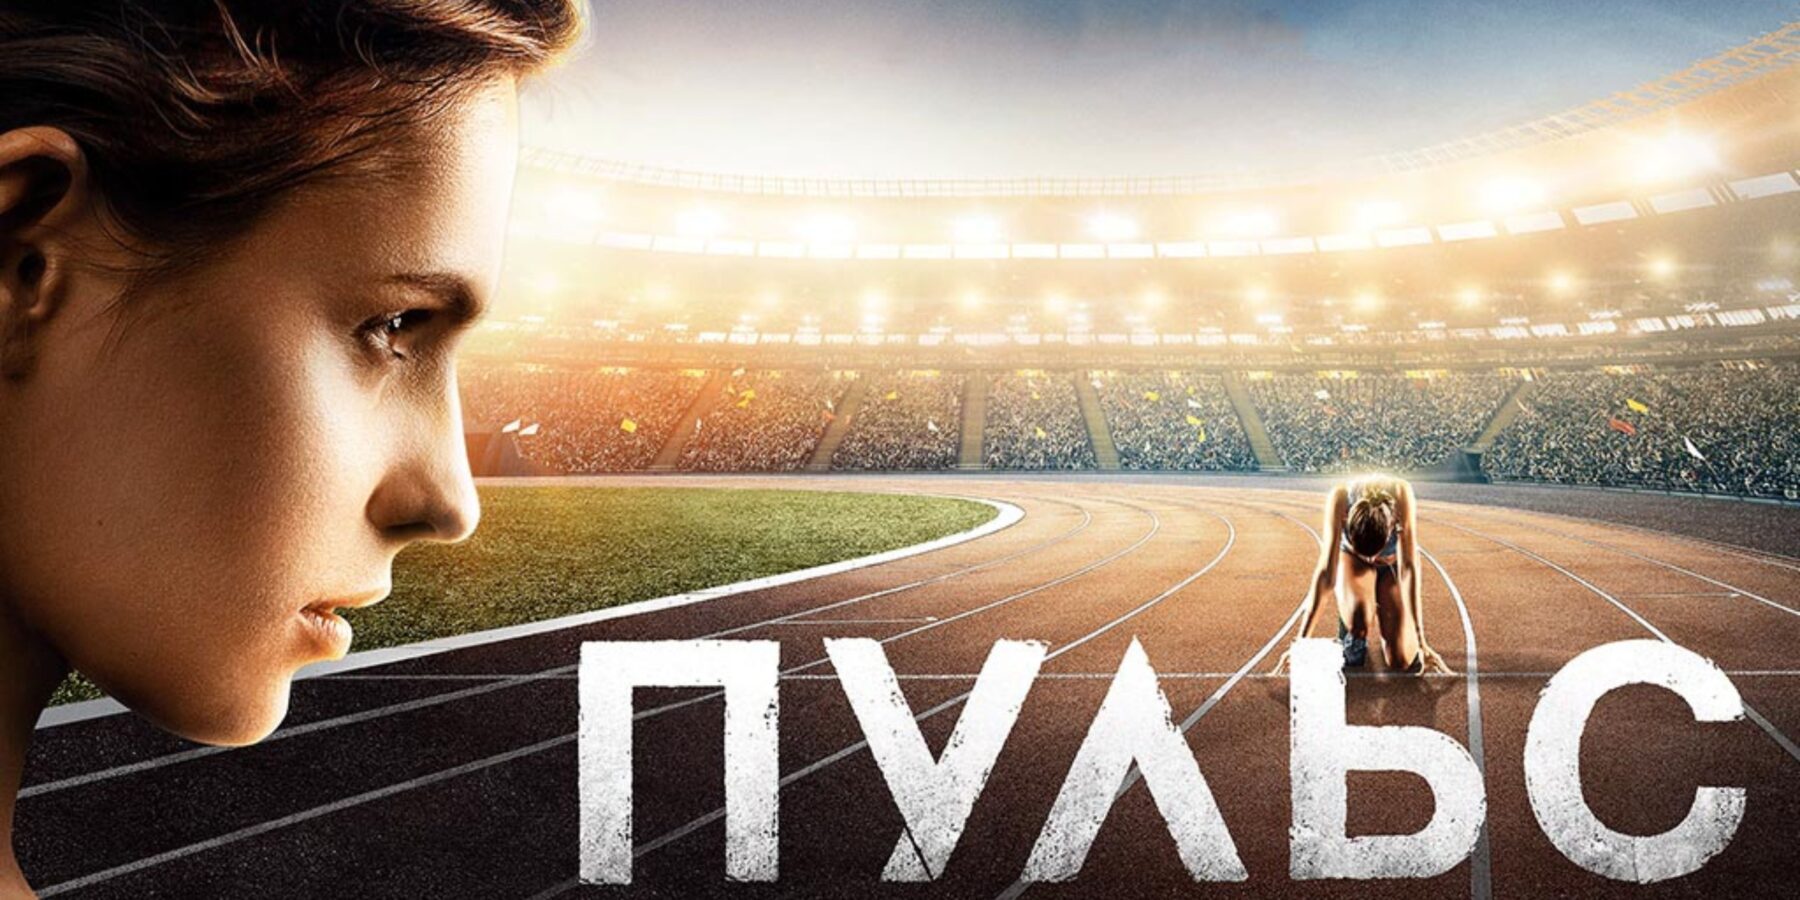 Українська спортивна драма "Пульс" стала доступною для онлайн-перегляду (трейлер)